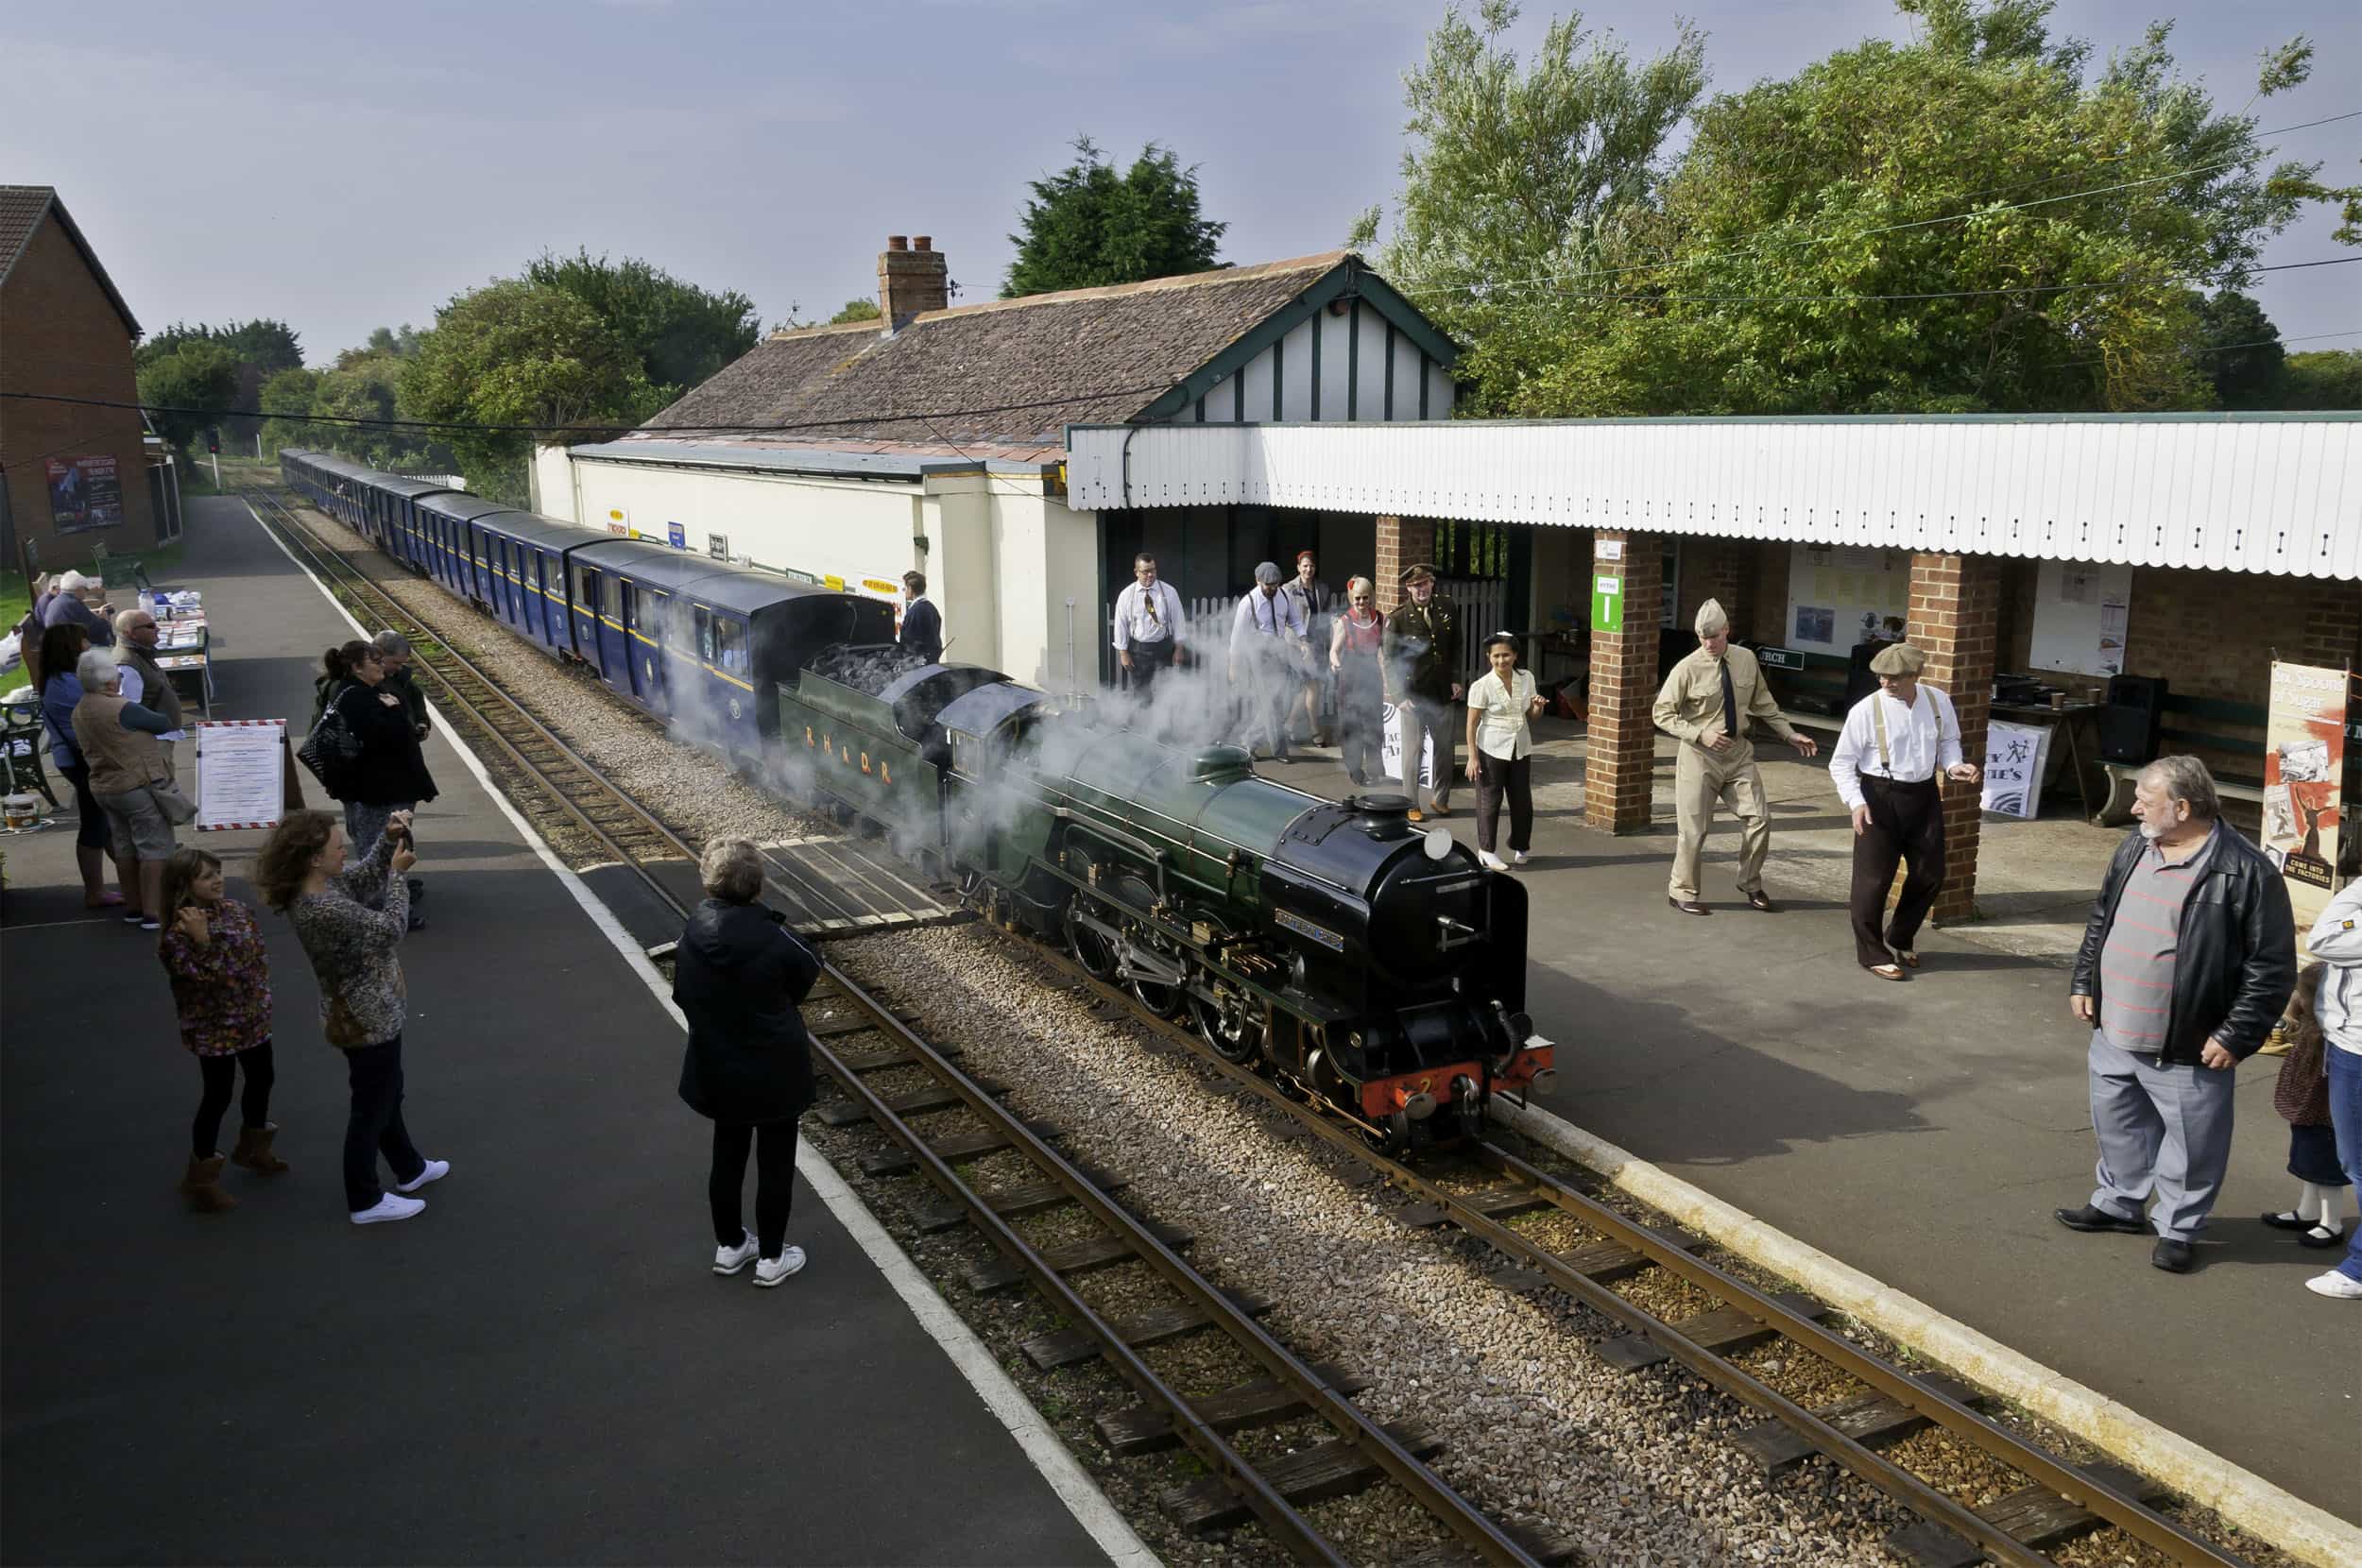 Romney, Hythe & Dymchurch Railway | Dymchurch Station